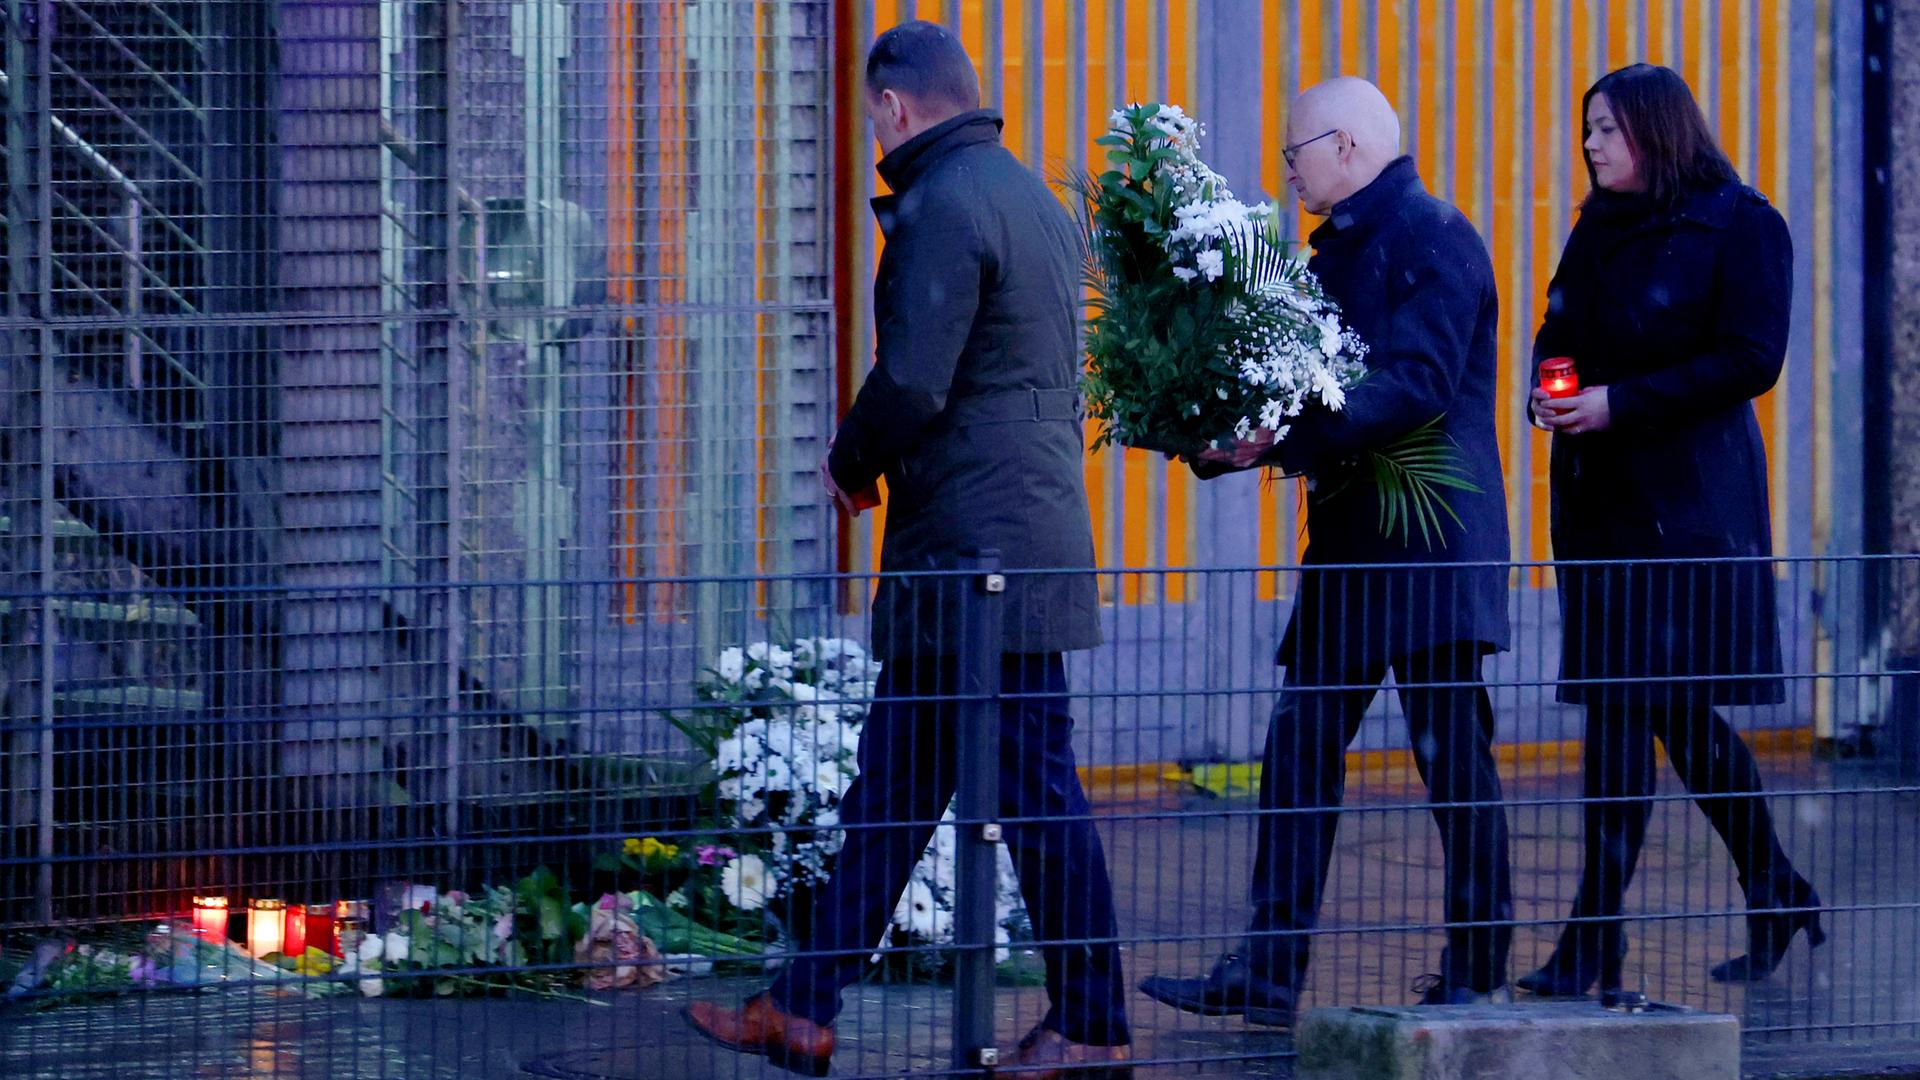 Hamburgs Erster Bürgermeister Tschentscher (Mitte) legt mit der Zweiten Bürgermeisterin Fegebank (rechts) Blumen am Tatort des Amoklaufs nieder.